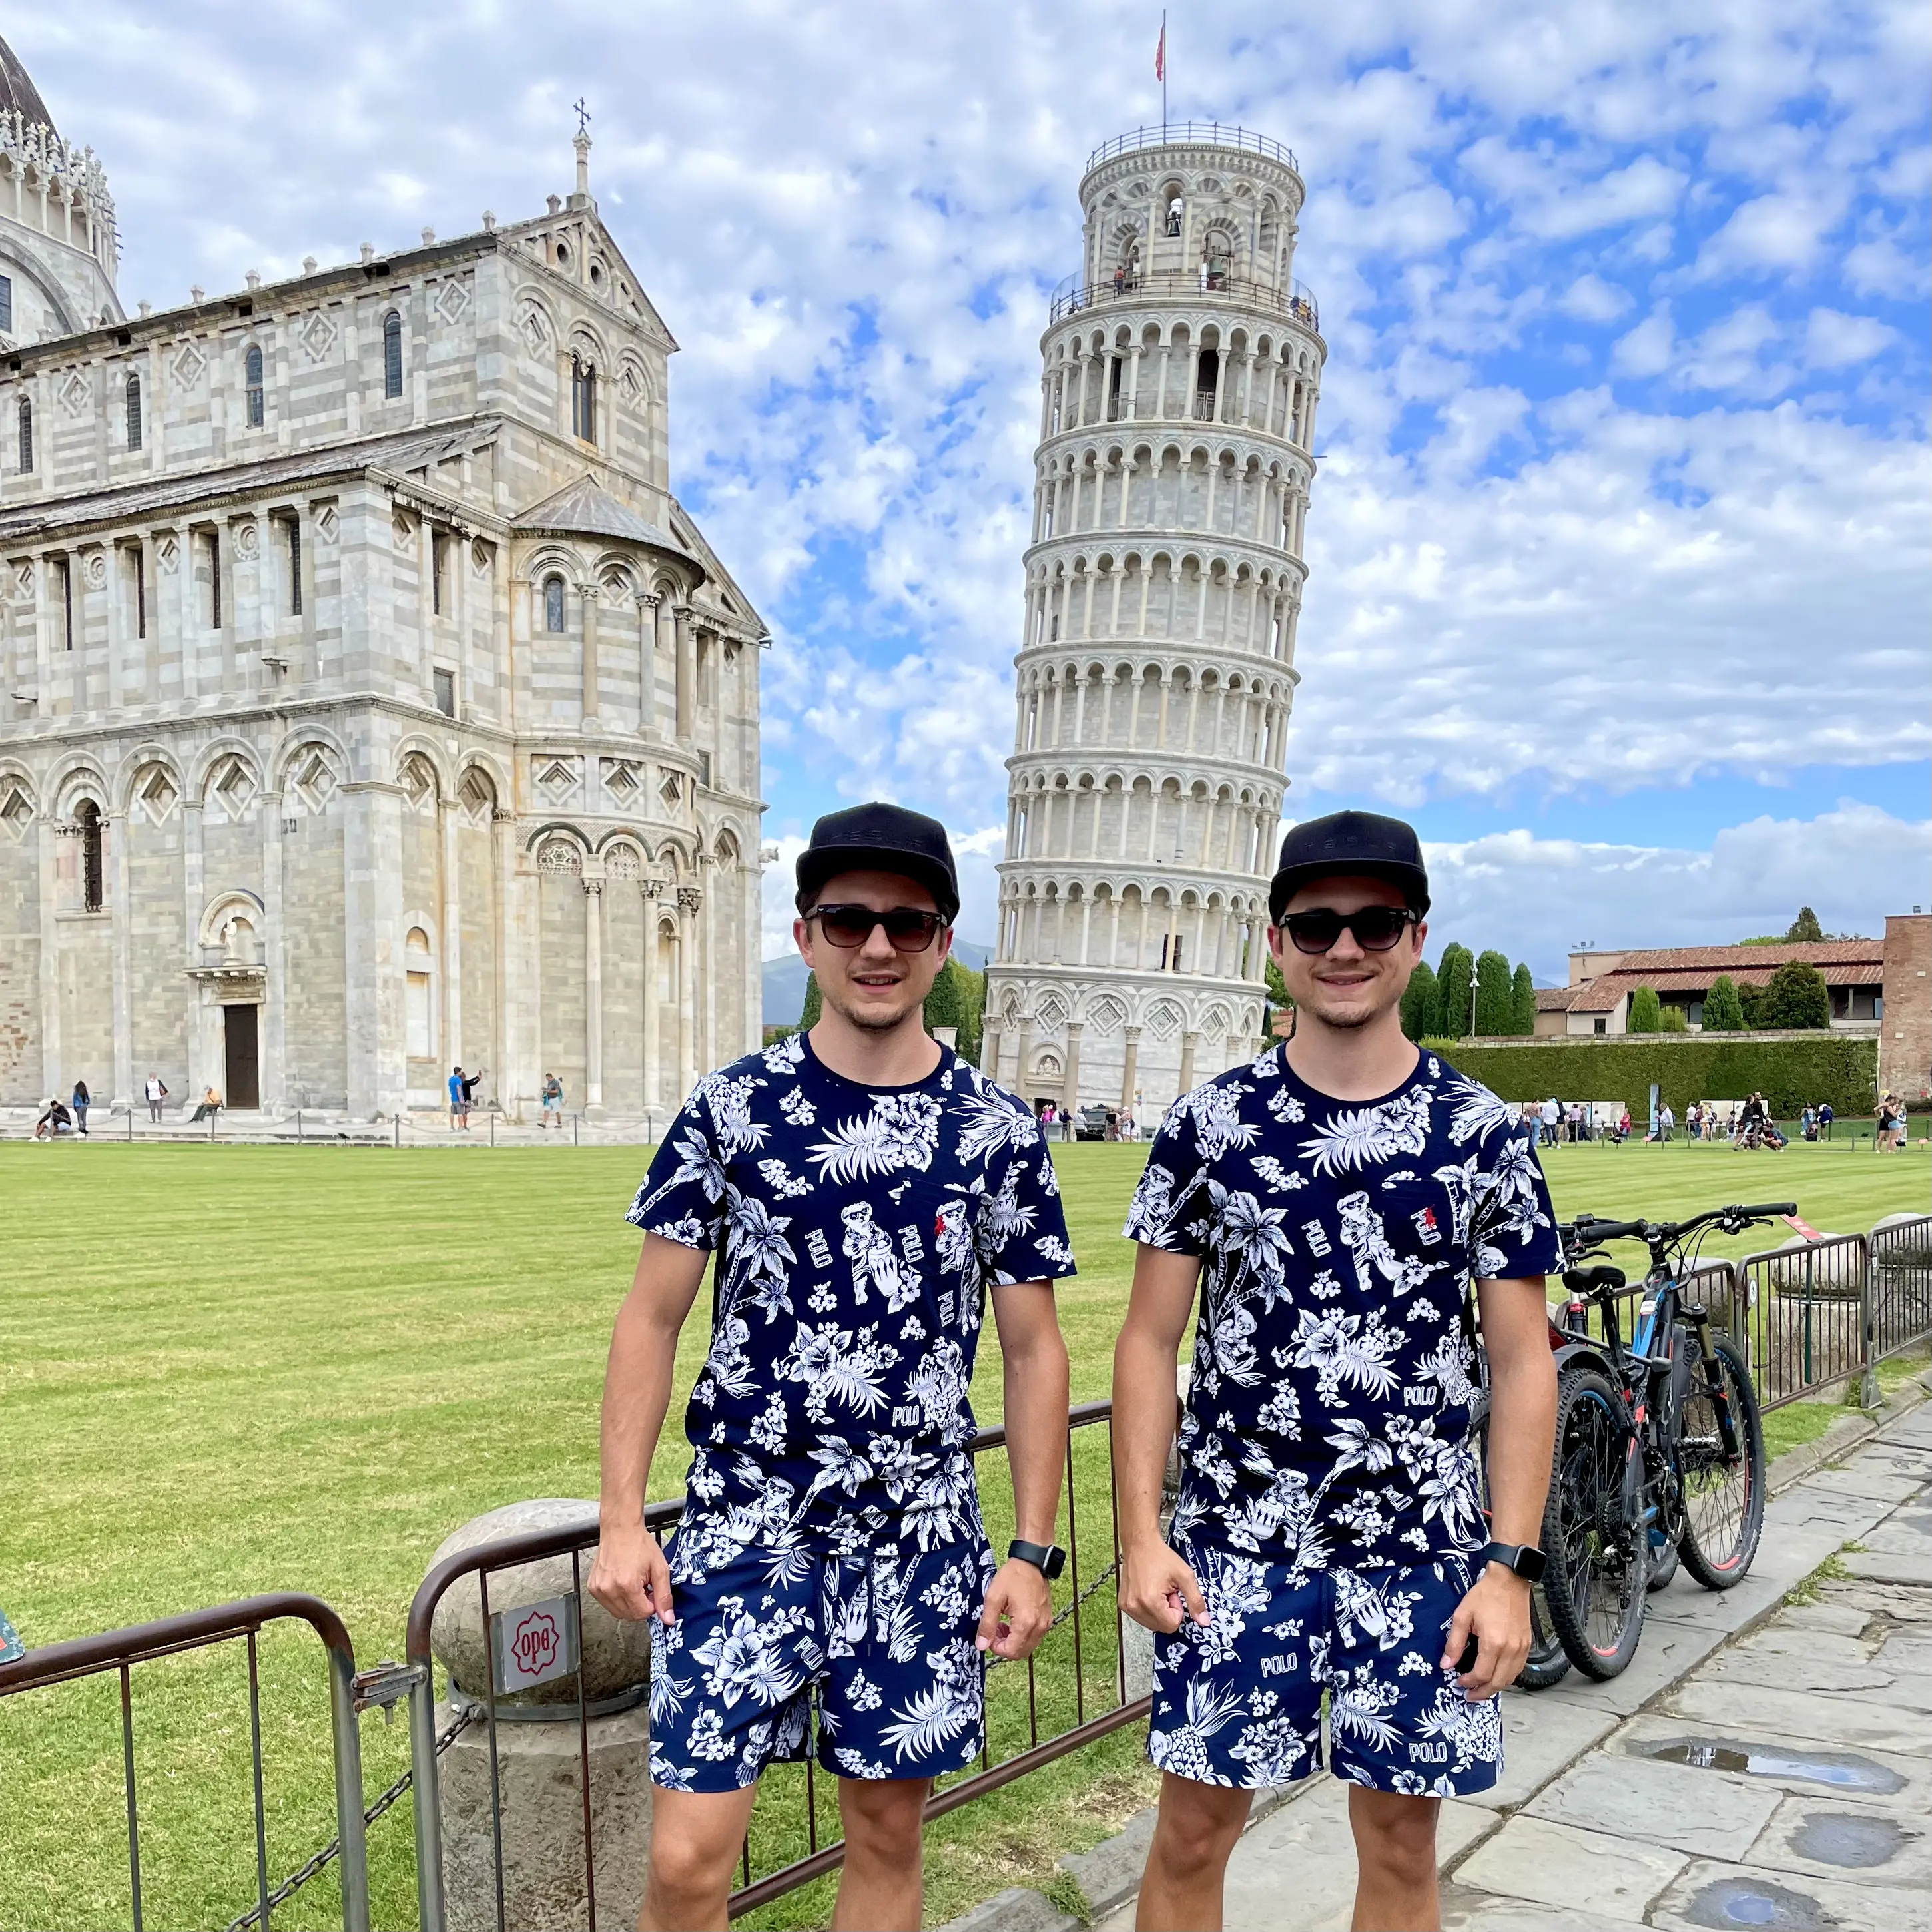 Tinz Twins am Schiefen Turm von Pisa